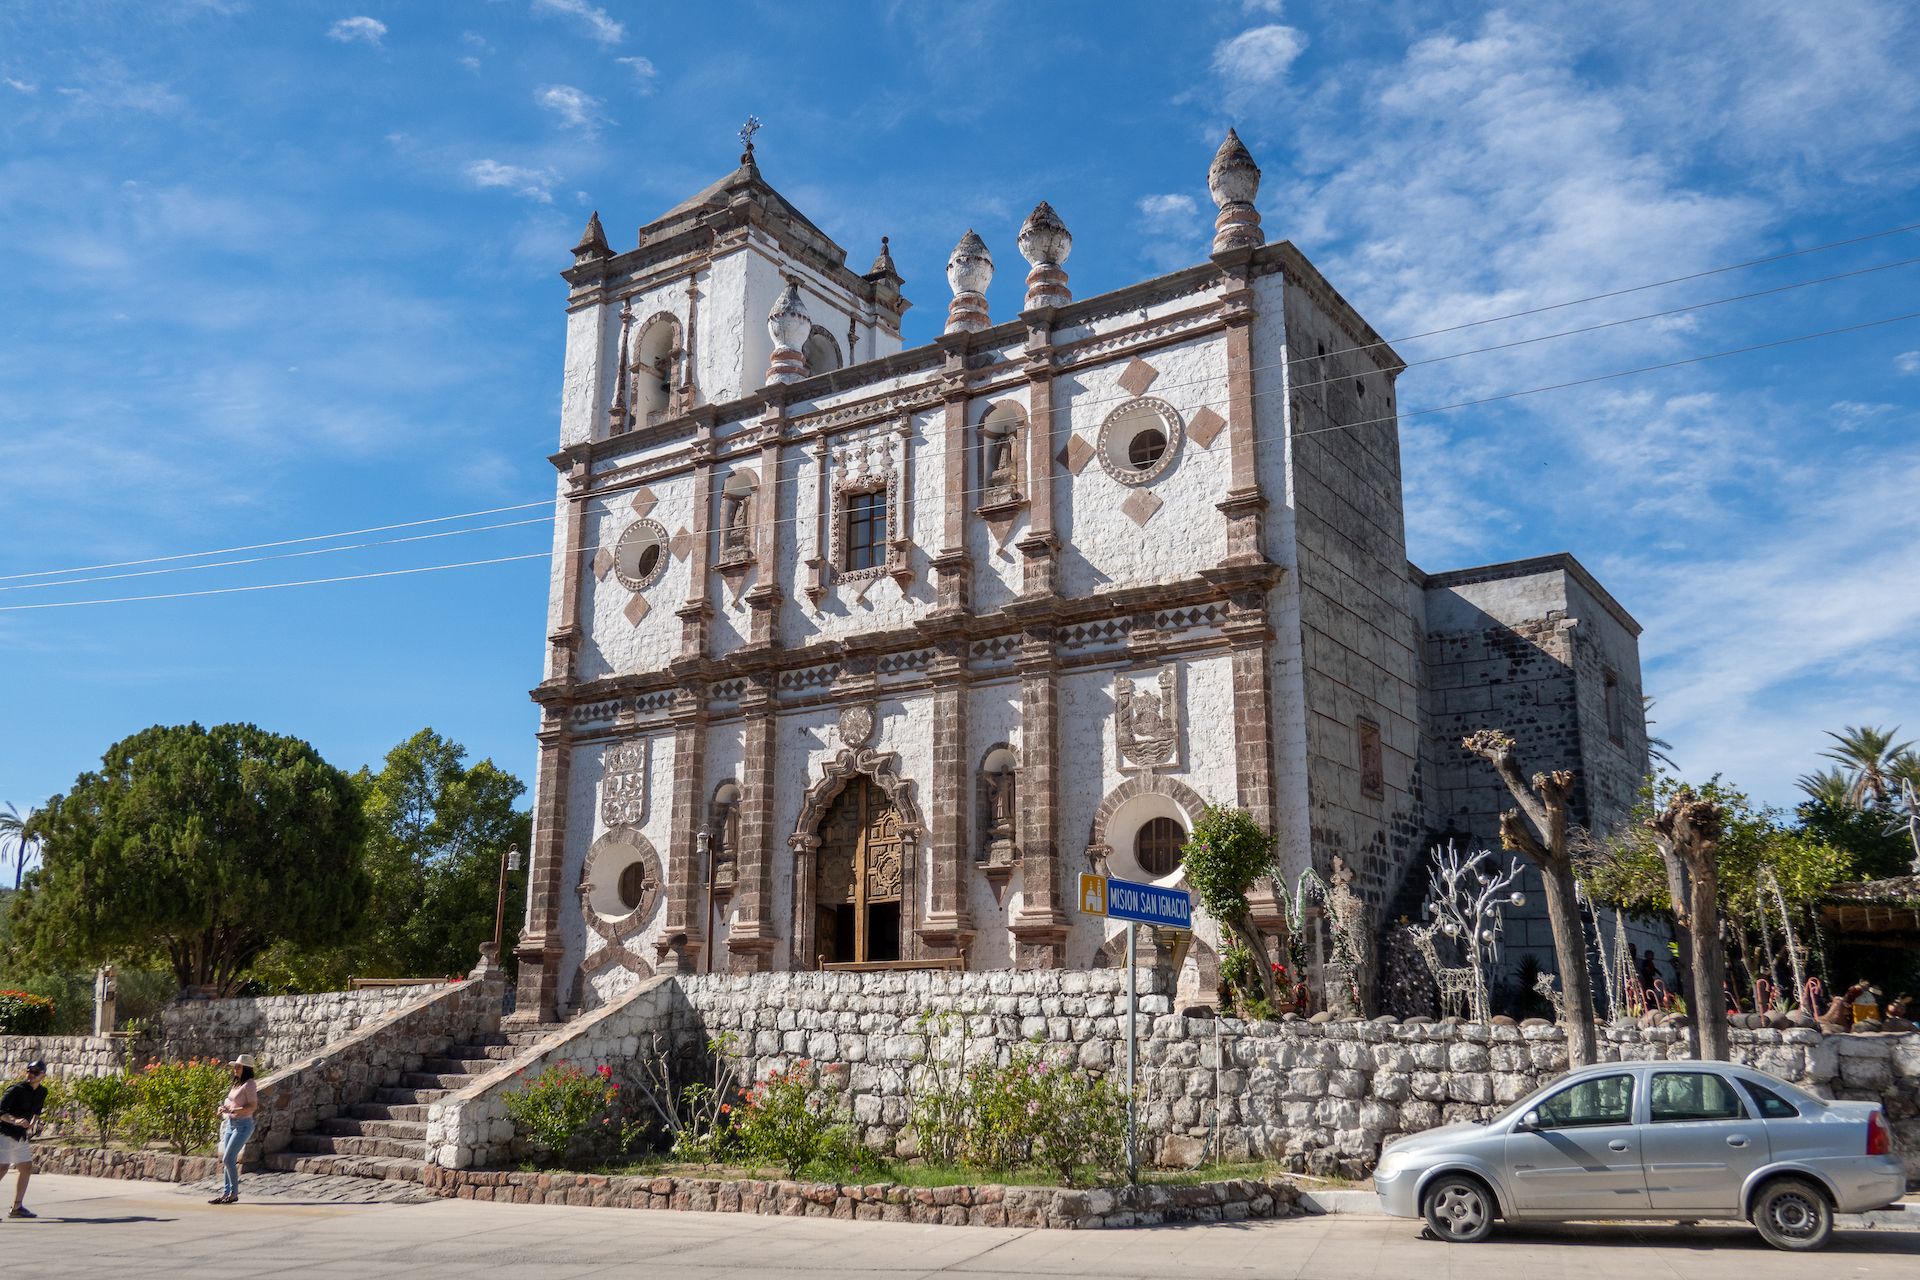 The beautiful Misión de San Ignacio